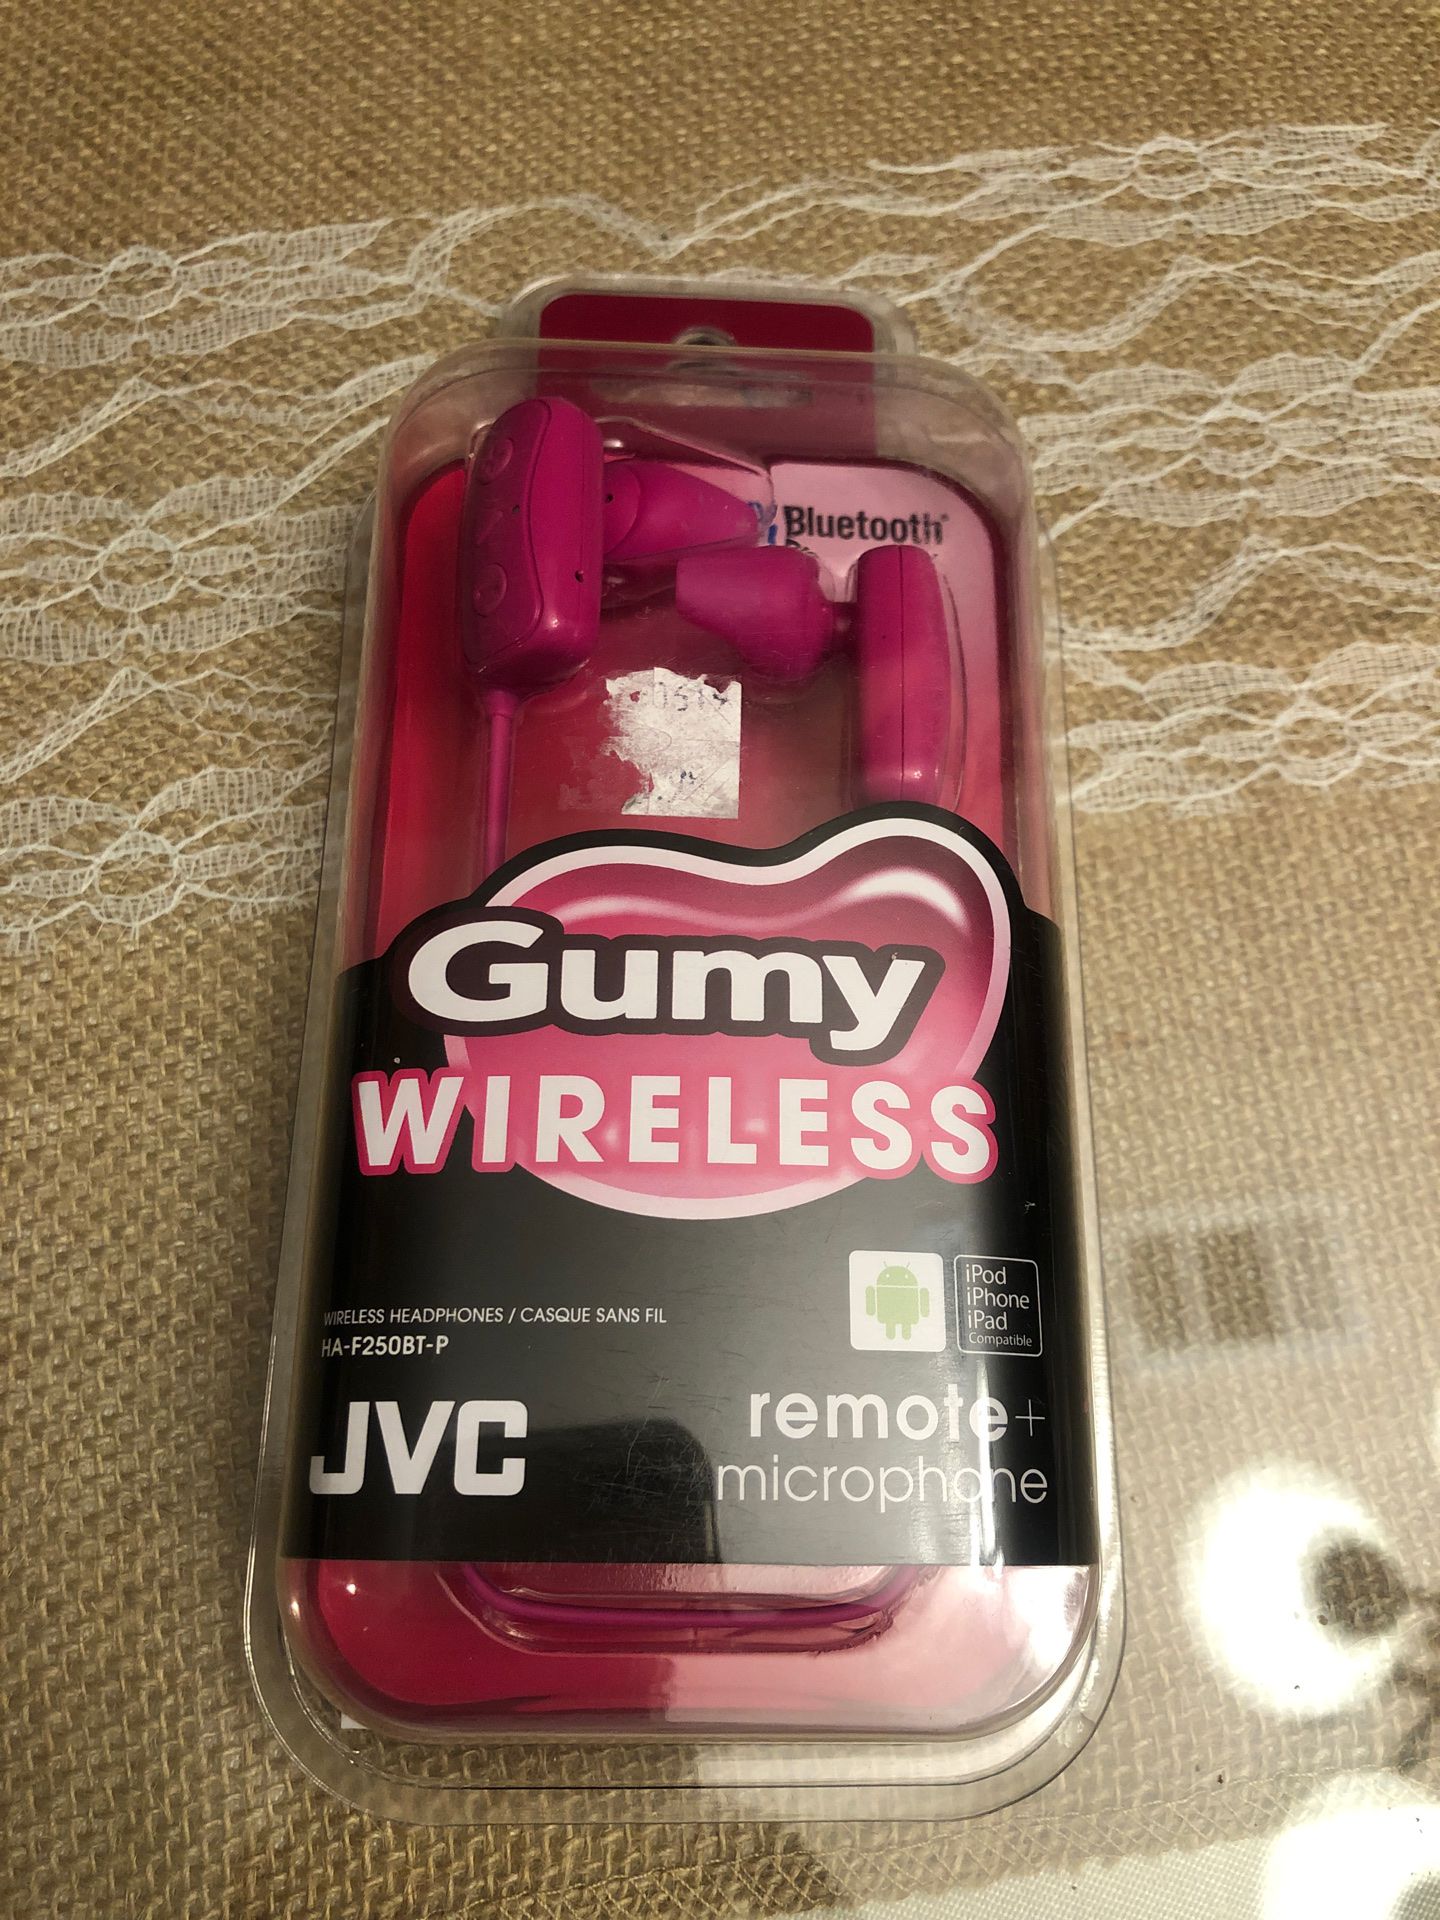 JVC Gumy WireLess